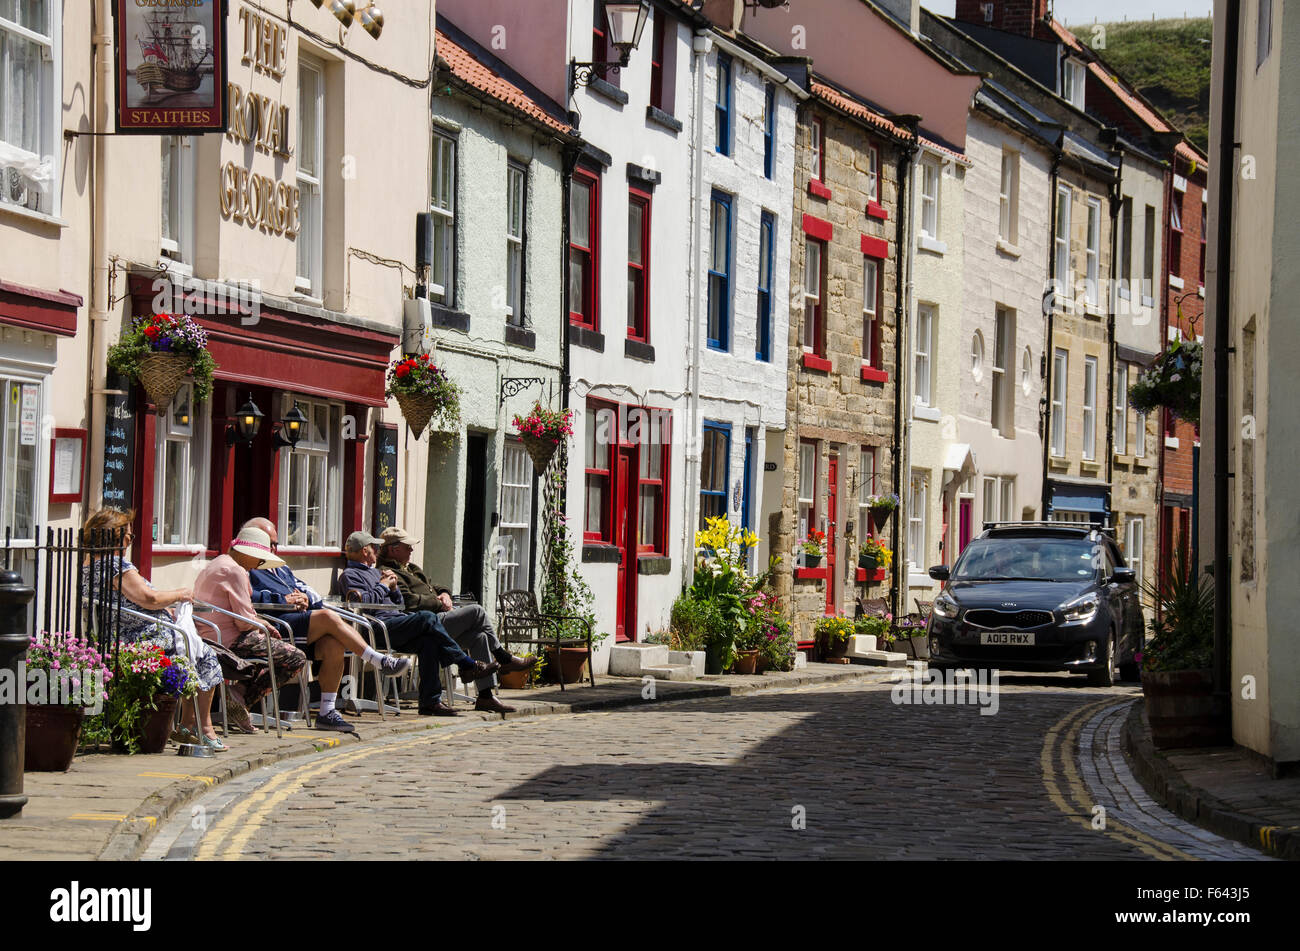 Location de séries comme les gens du coin s'asseoir au soleil, de détente en dehors de pub - Grande rue pavées étroites, pittoresque village de Staithes, North Yorkshire, UK. Banque D'Images